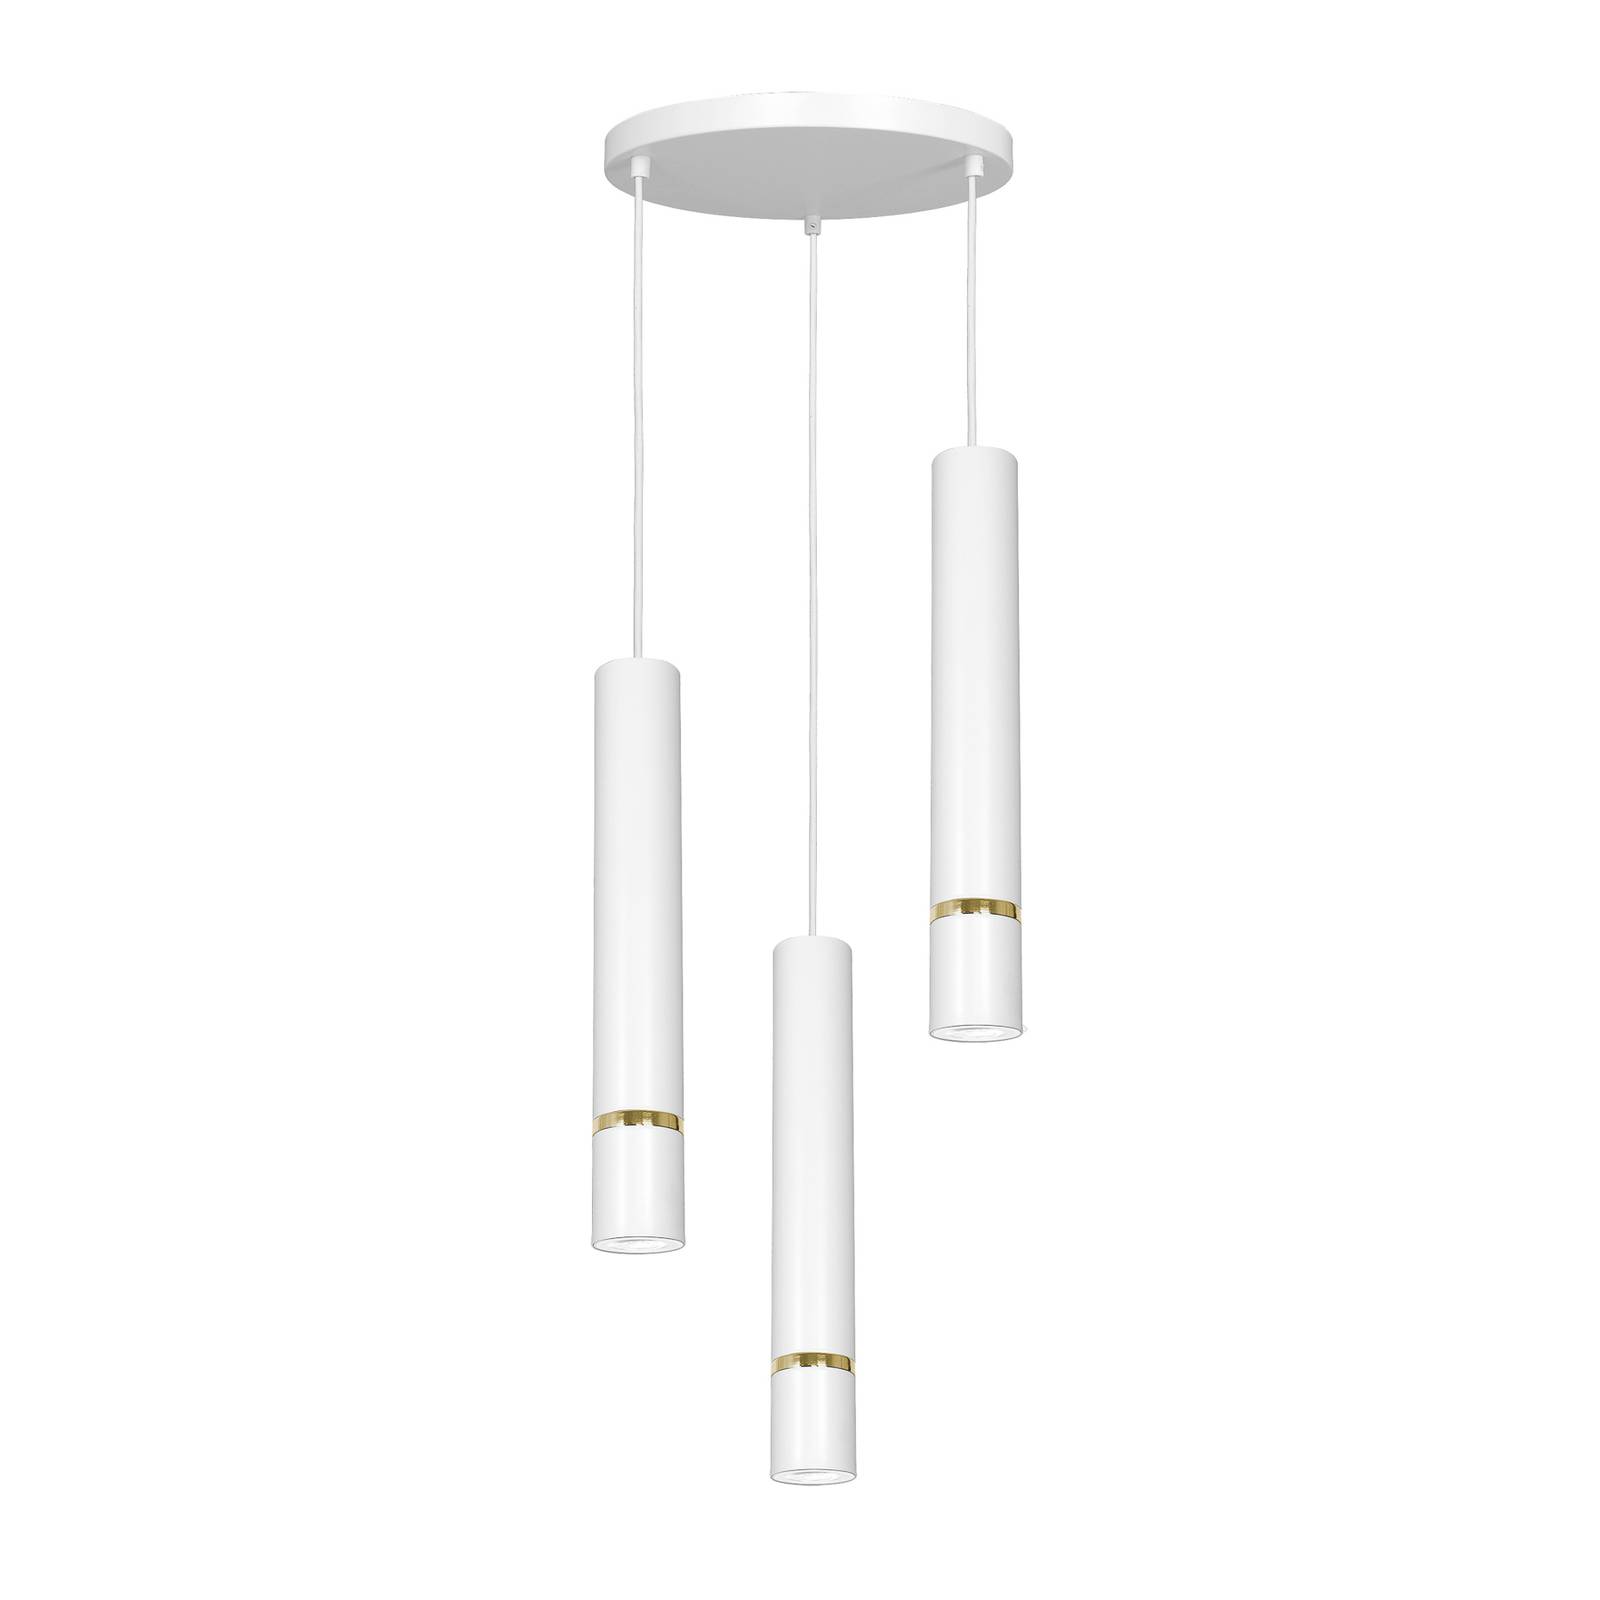 Suspension Rondo blanche/chromée 3 lampes, ronde